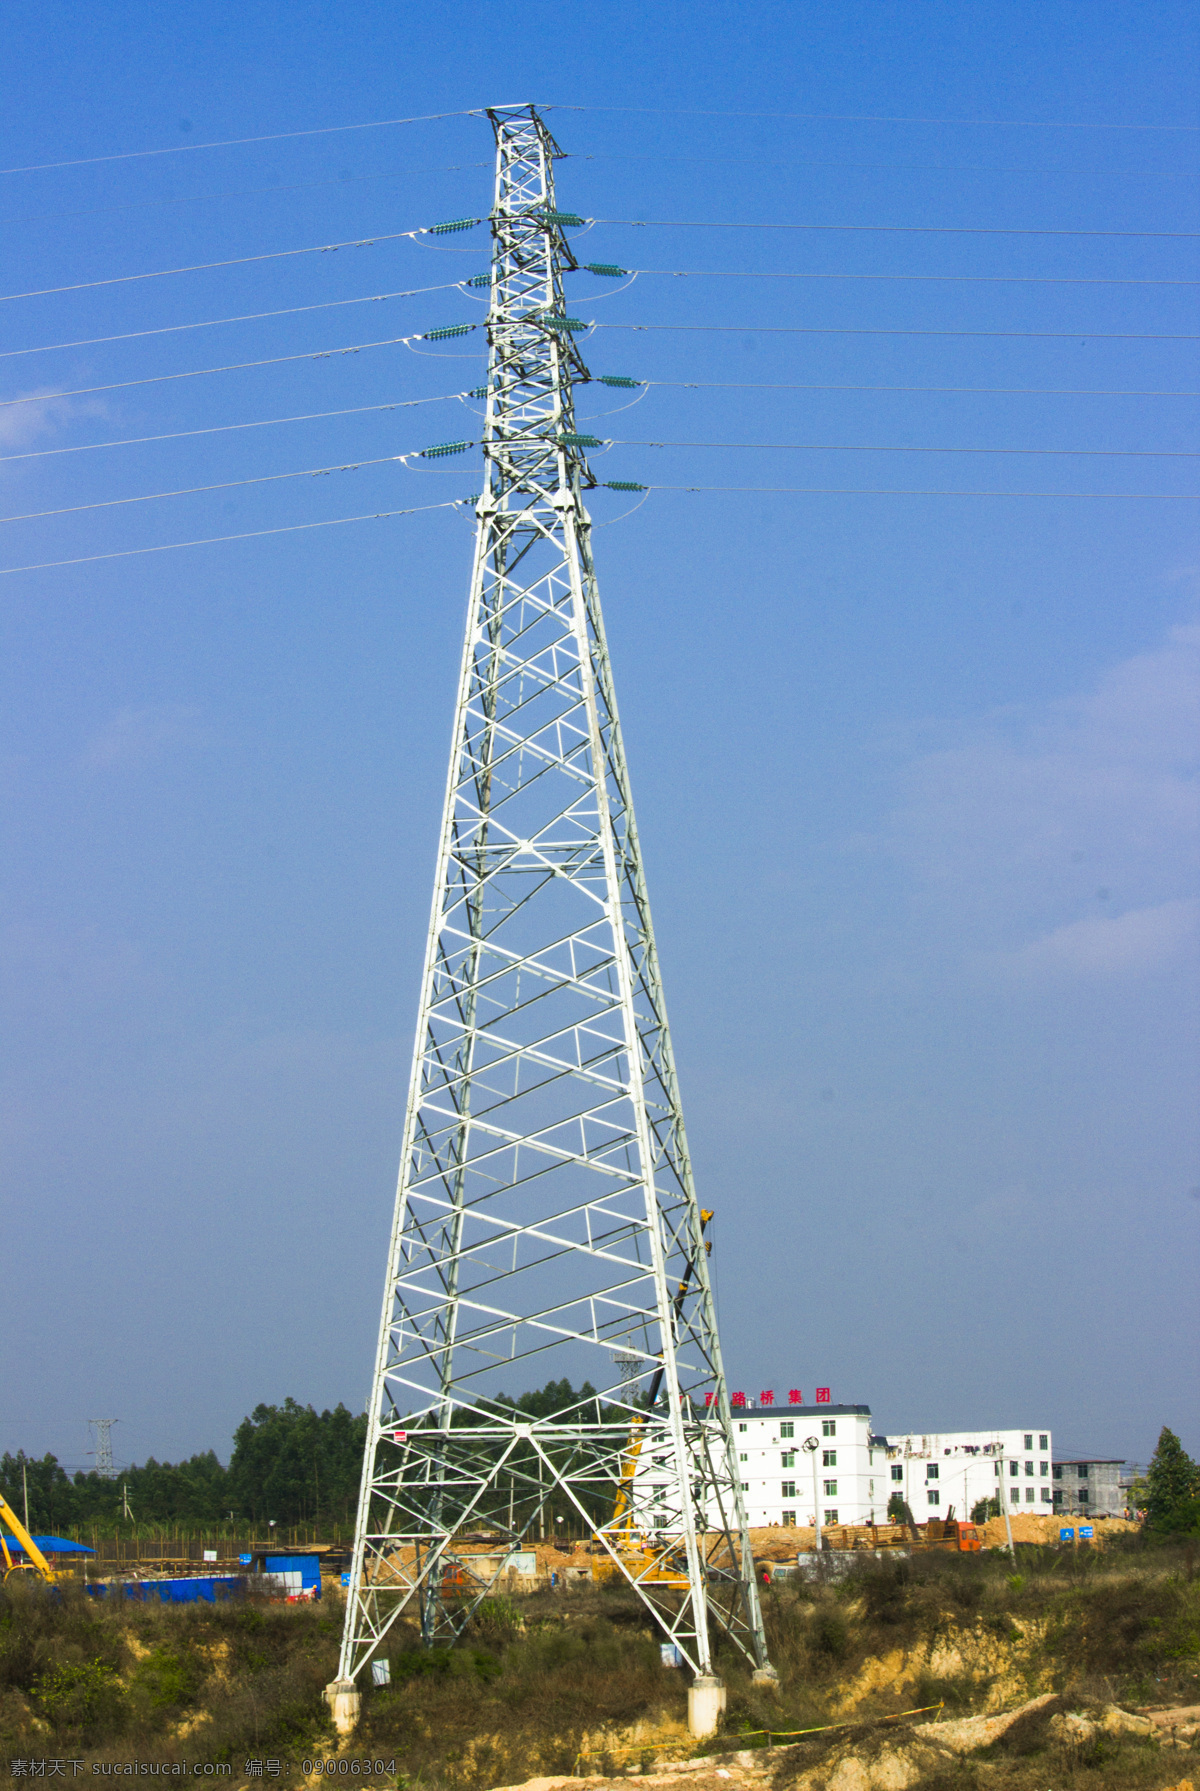 高压线塔架 高压线 高压线图片 高压线素材 铁塔 塔架 高压线杆 自然景观 自然风景